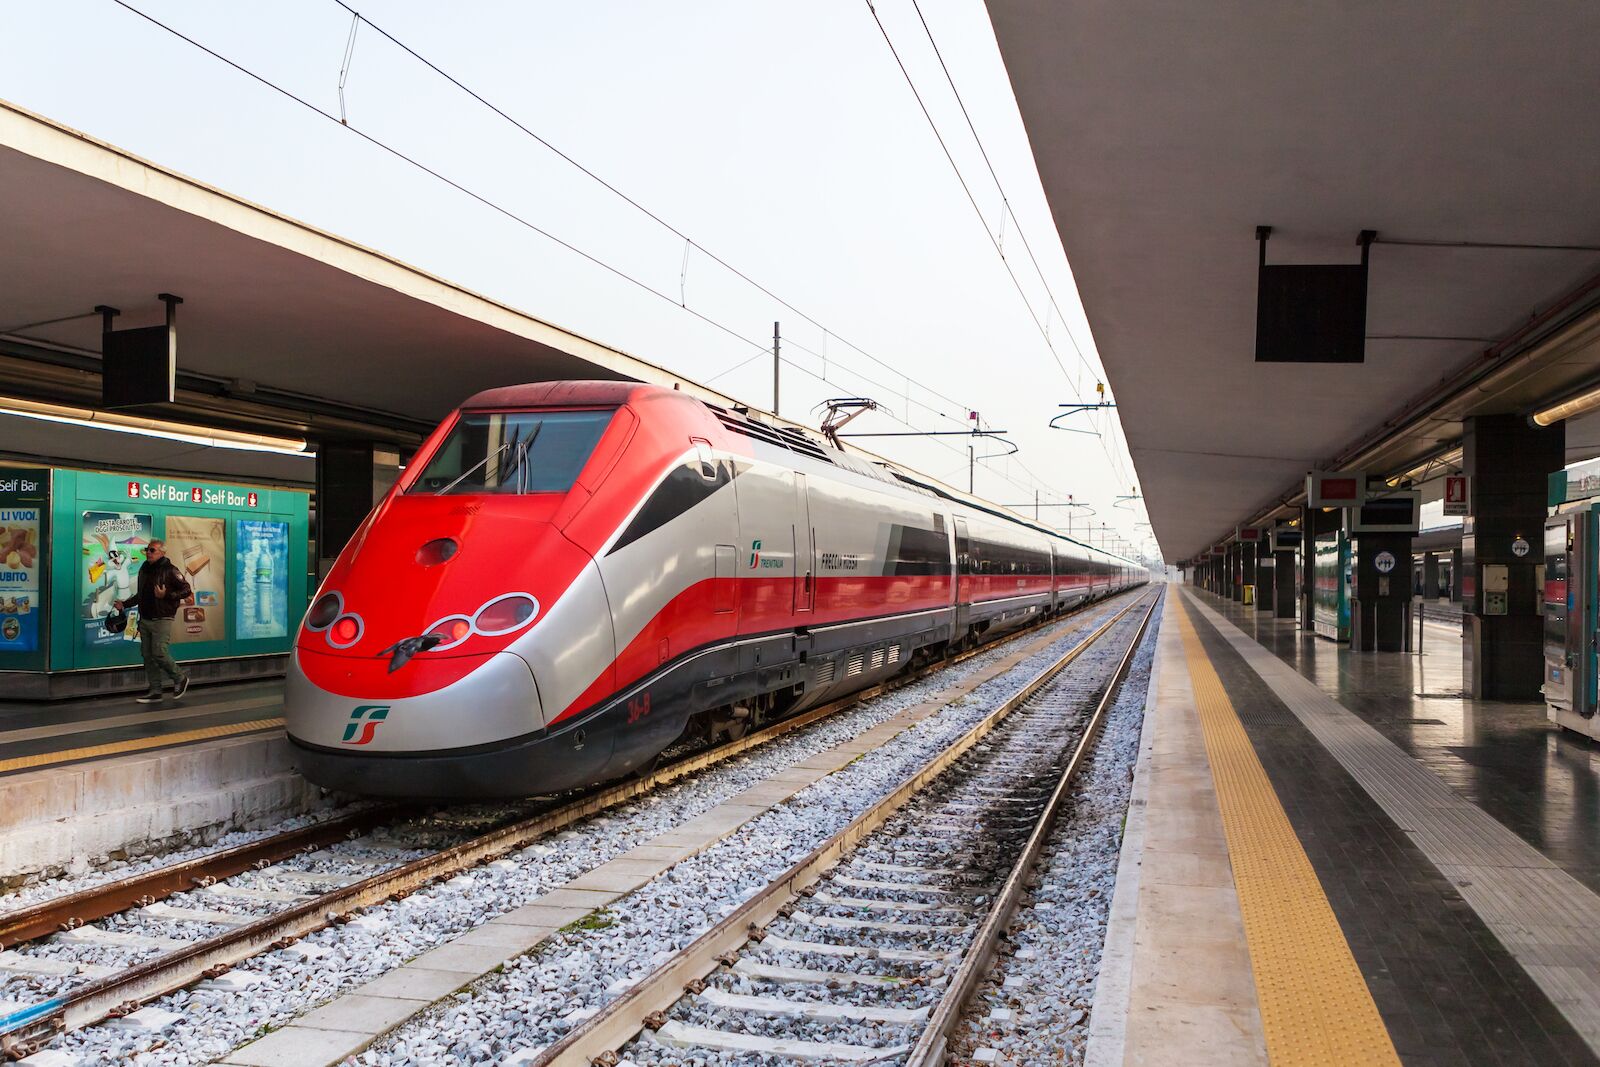 Italian high-speed train Frecciarossa in the Naples train station